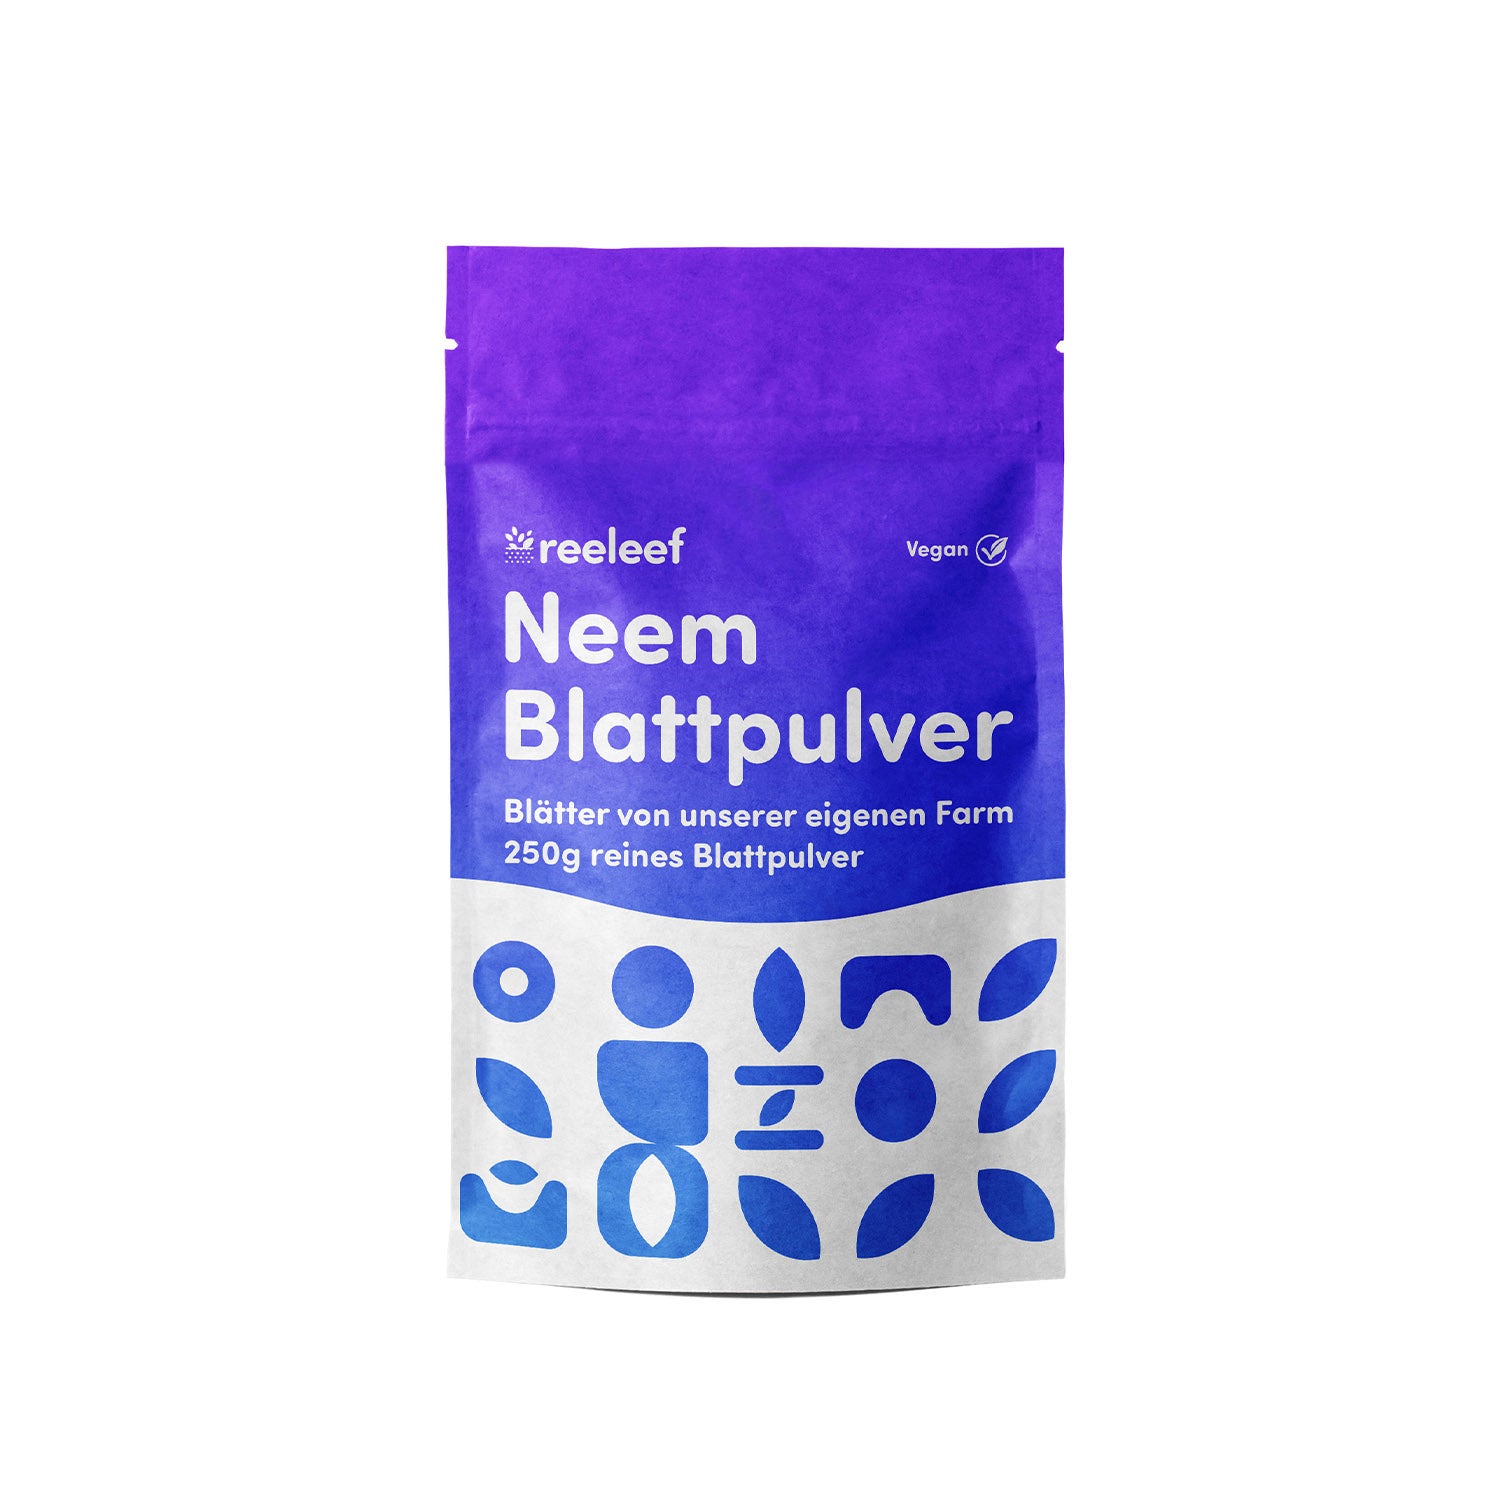 Zu sehen ist die Verpackung und Beschriftung unseres Produkts, dem Neem Pulver in 250gr, in einem elektrischem blau und lila.